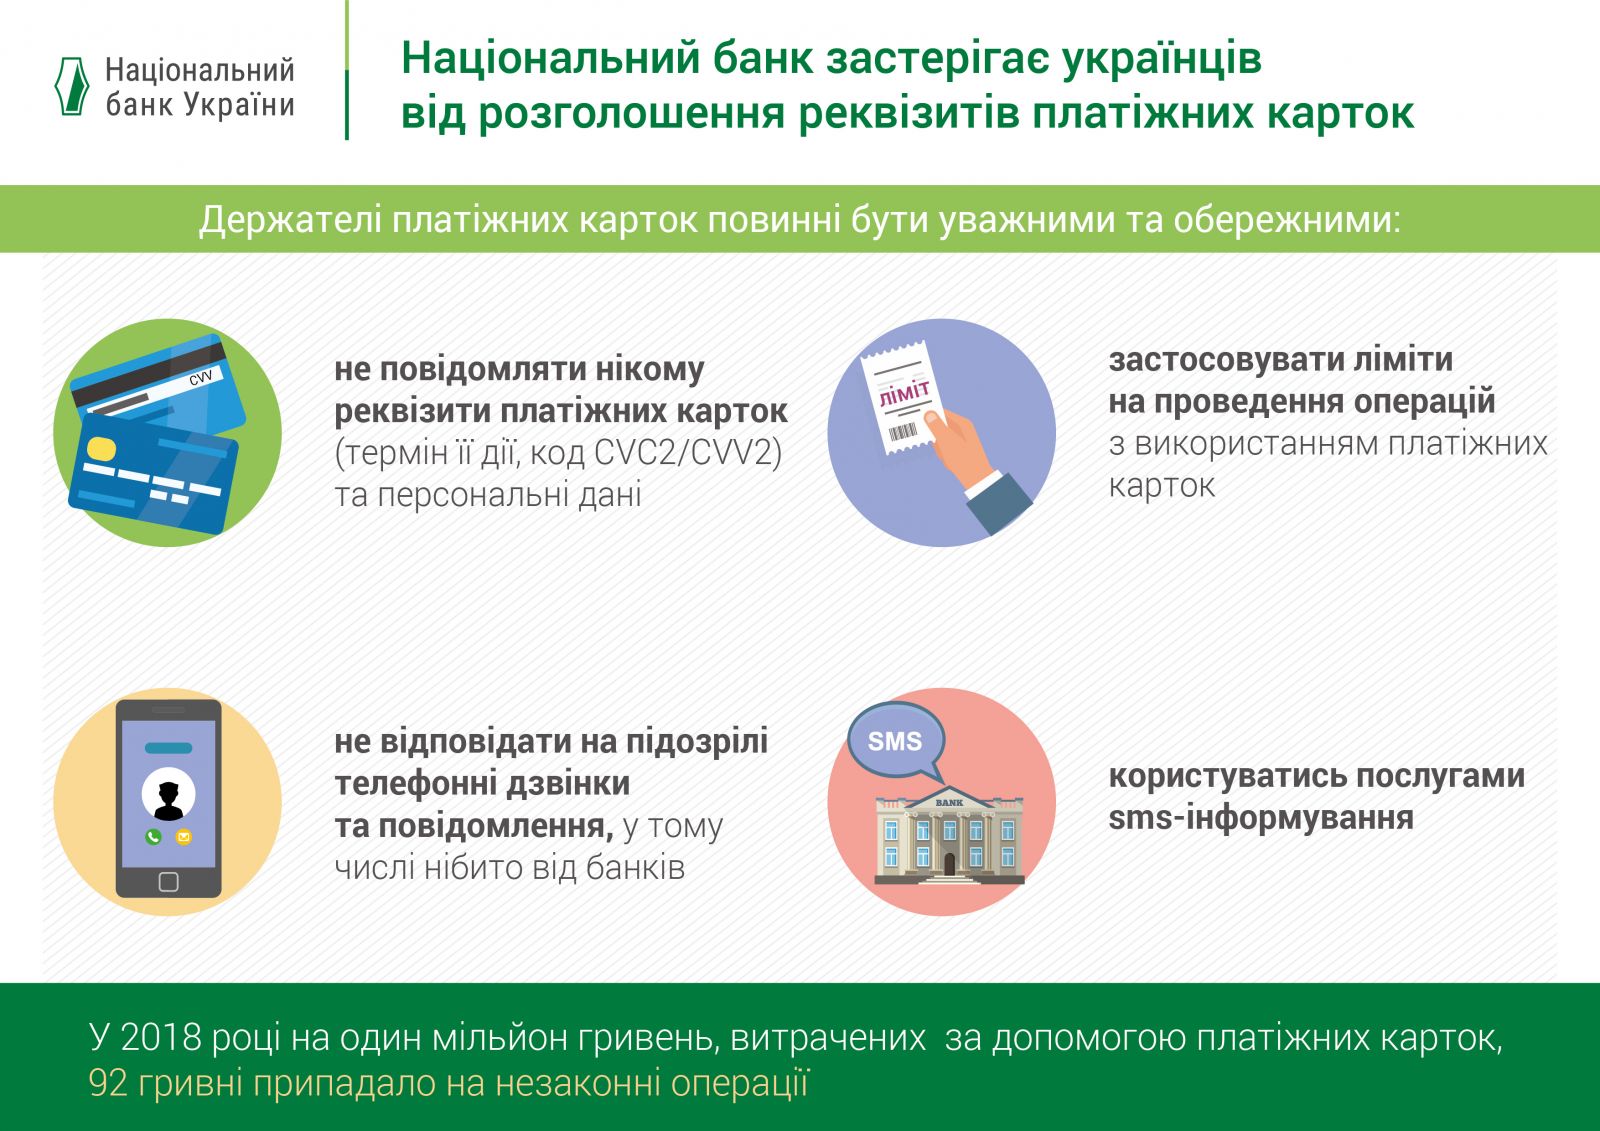 В Україні почастішали махінації з банківськими картками, - НБУ